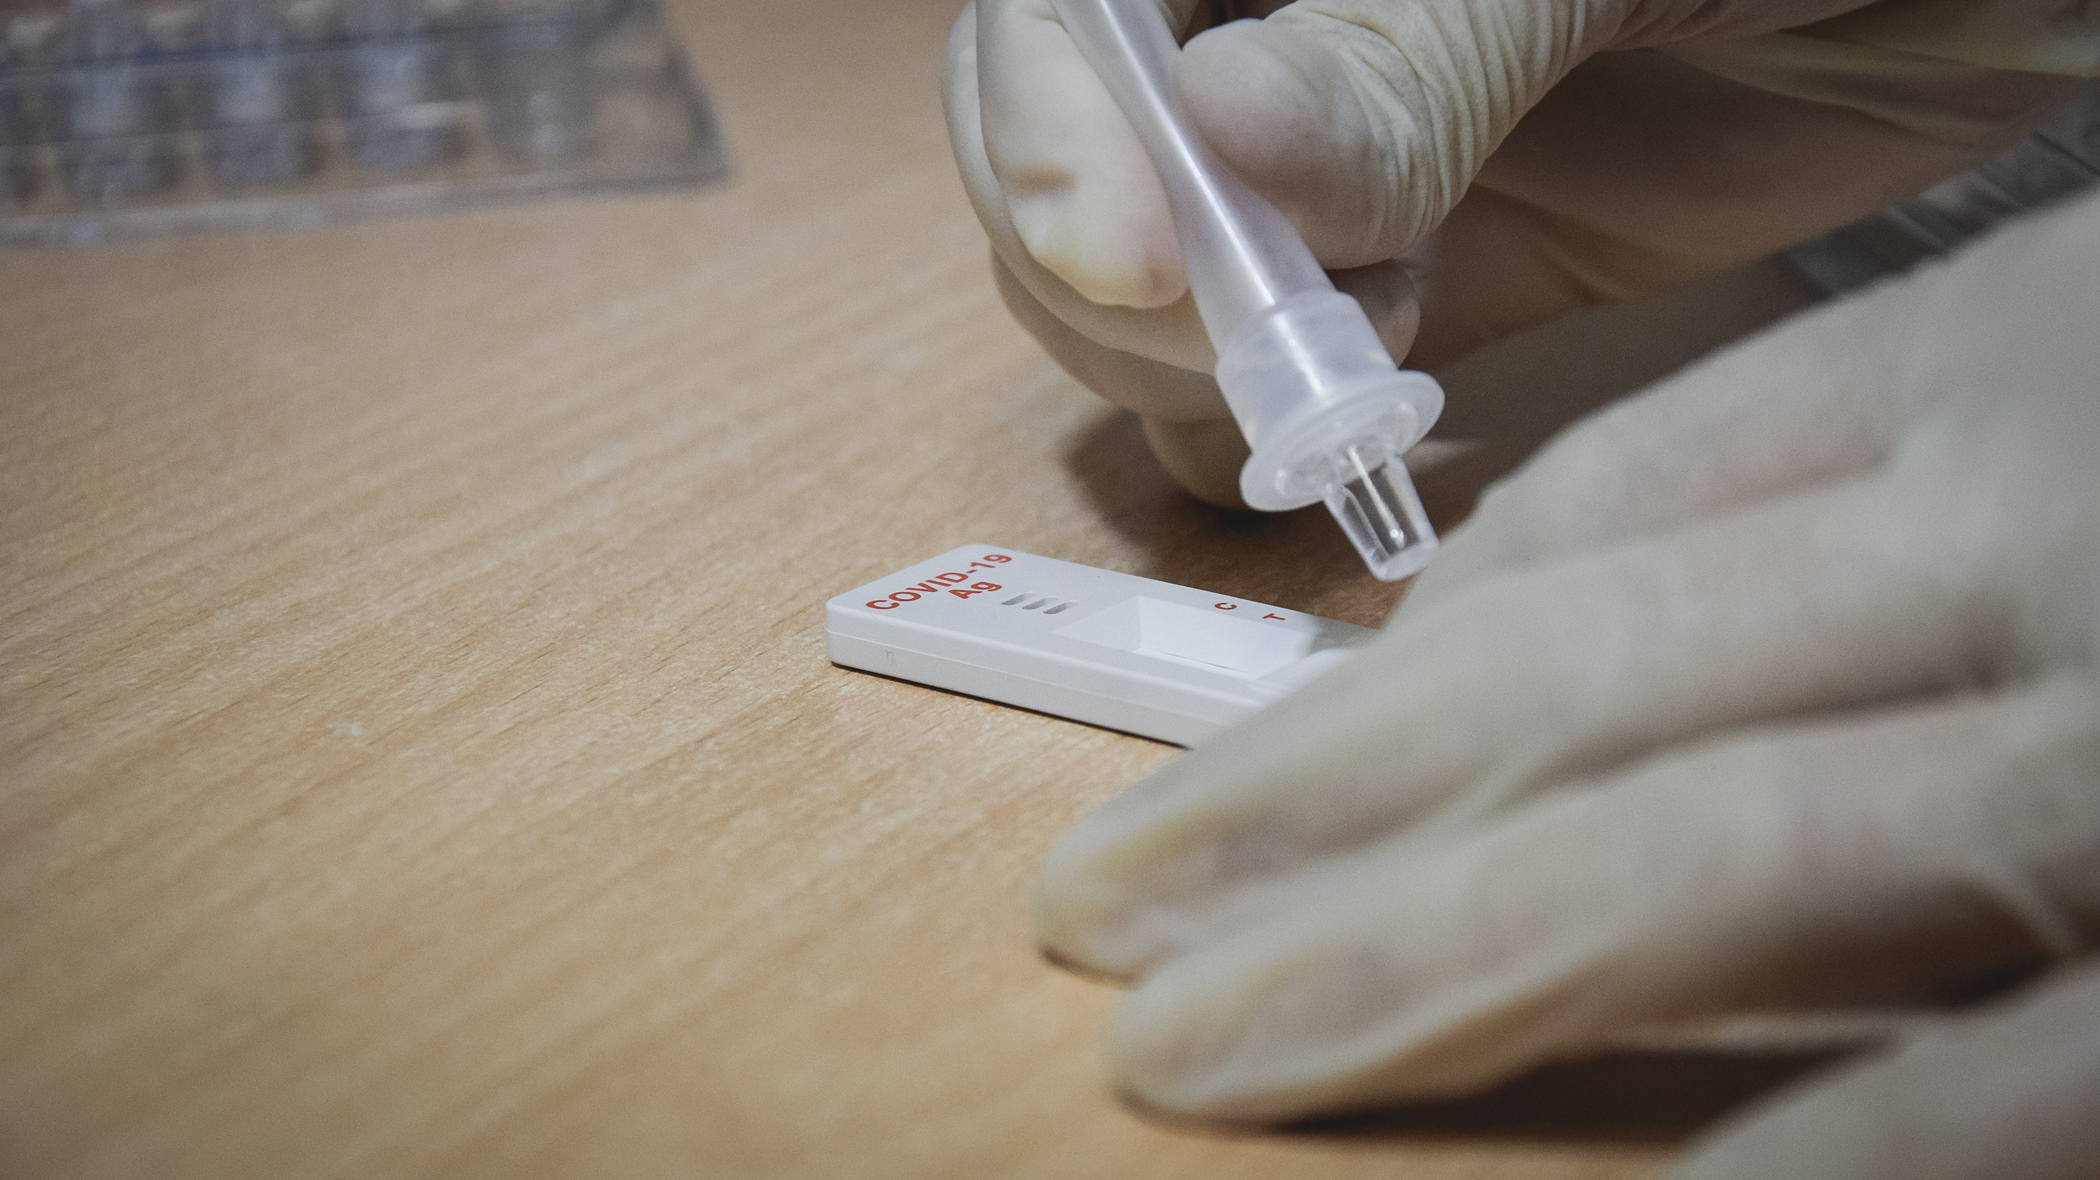 Новая лаборатория для тестирования на коронавирус появится в Таганроге